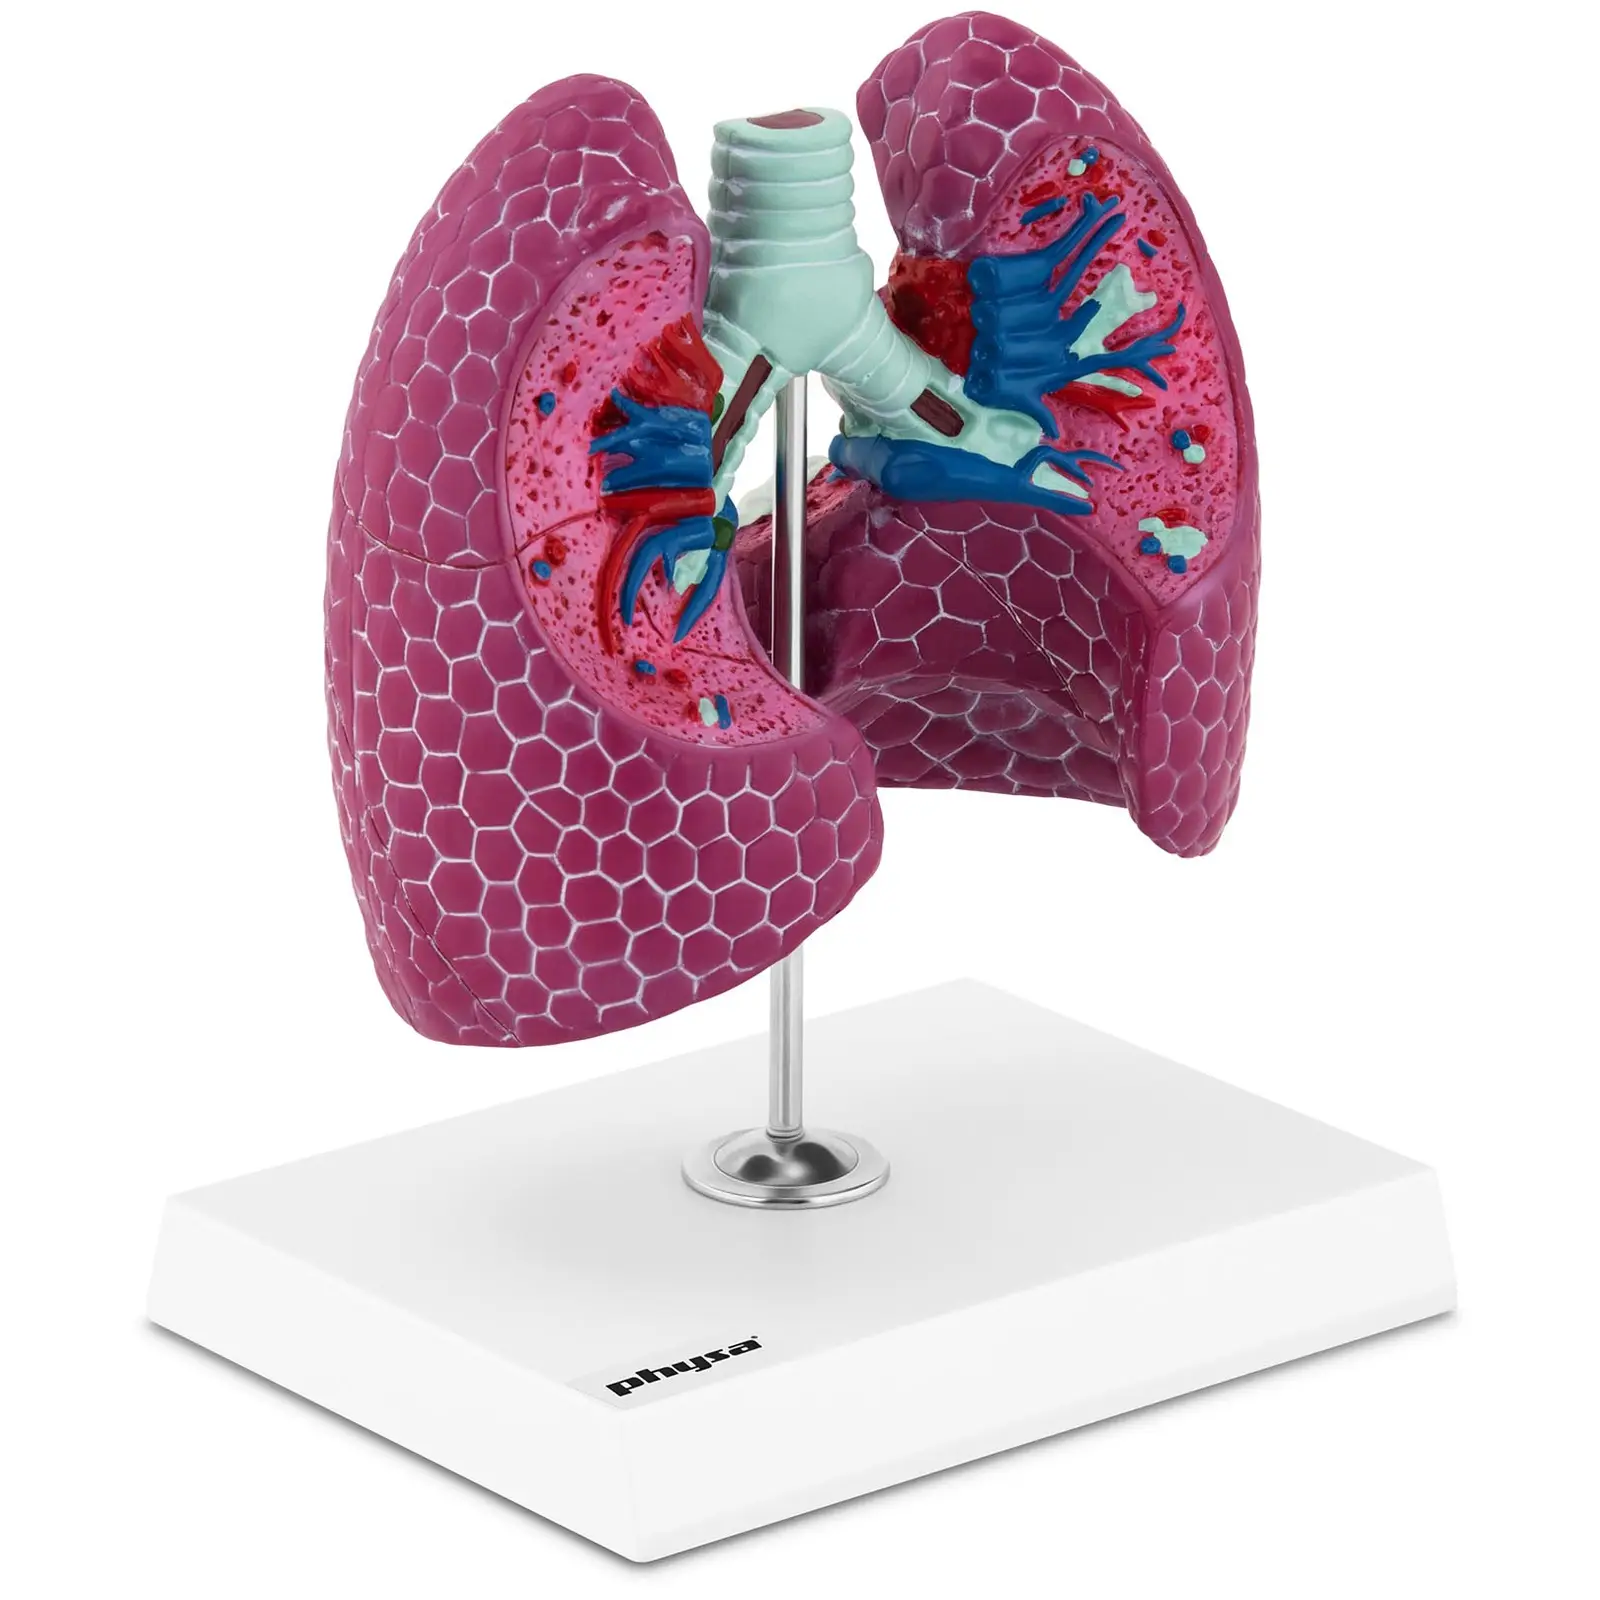 Lungenmodell - mit Pathologien